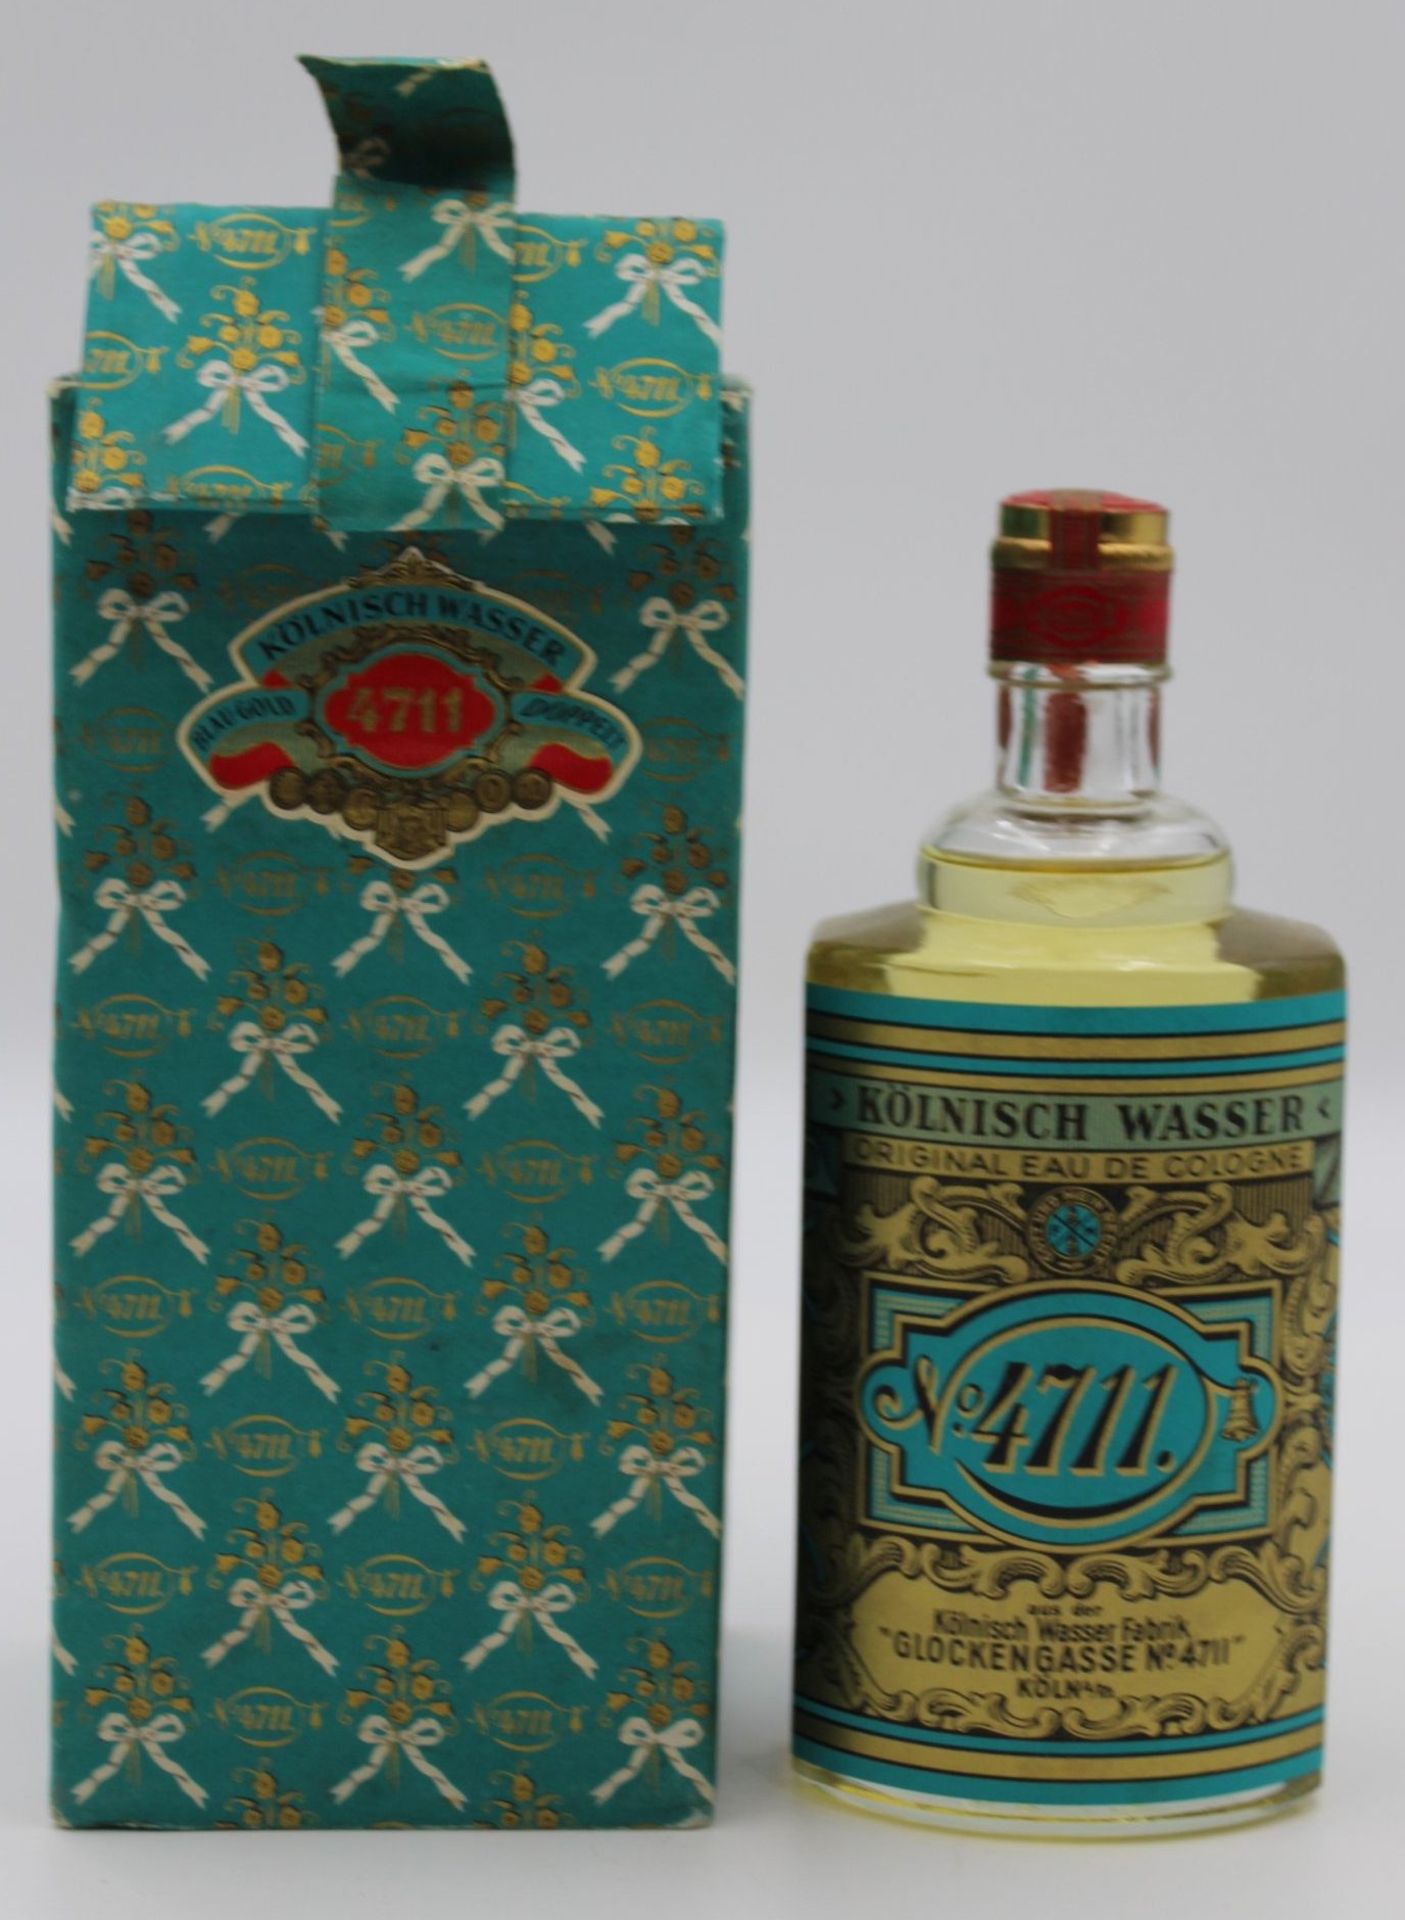 Eine Volle Flasche 4711 Kölnisch Wasser in alter Originaler Verpackung , wohl nicht zusammengehörig